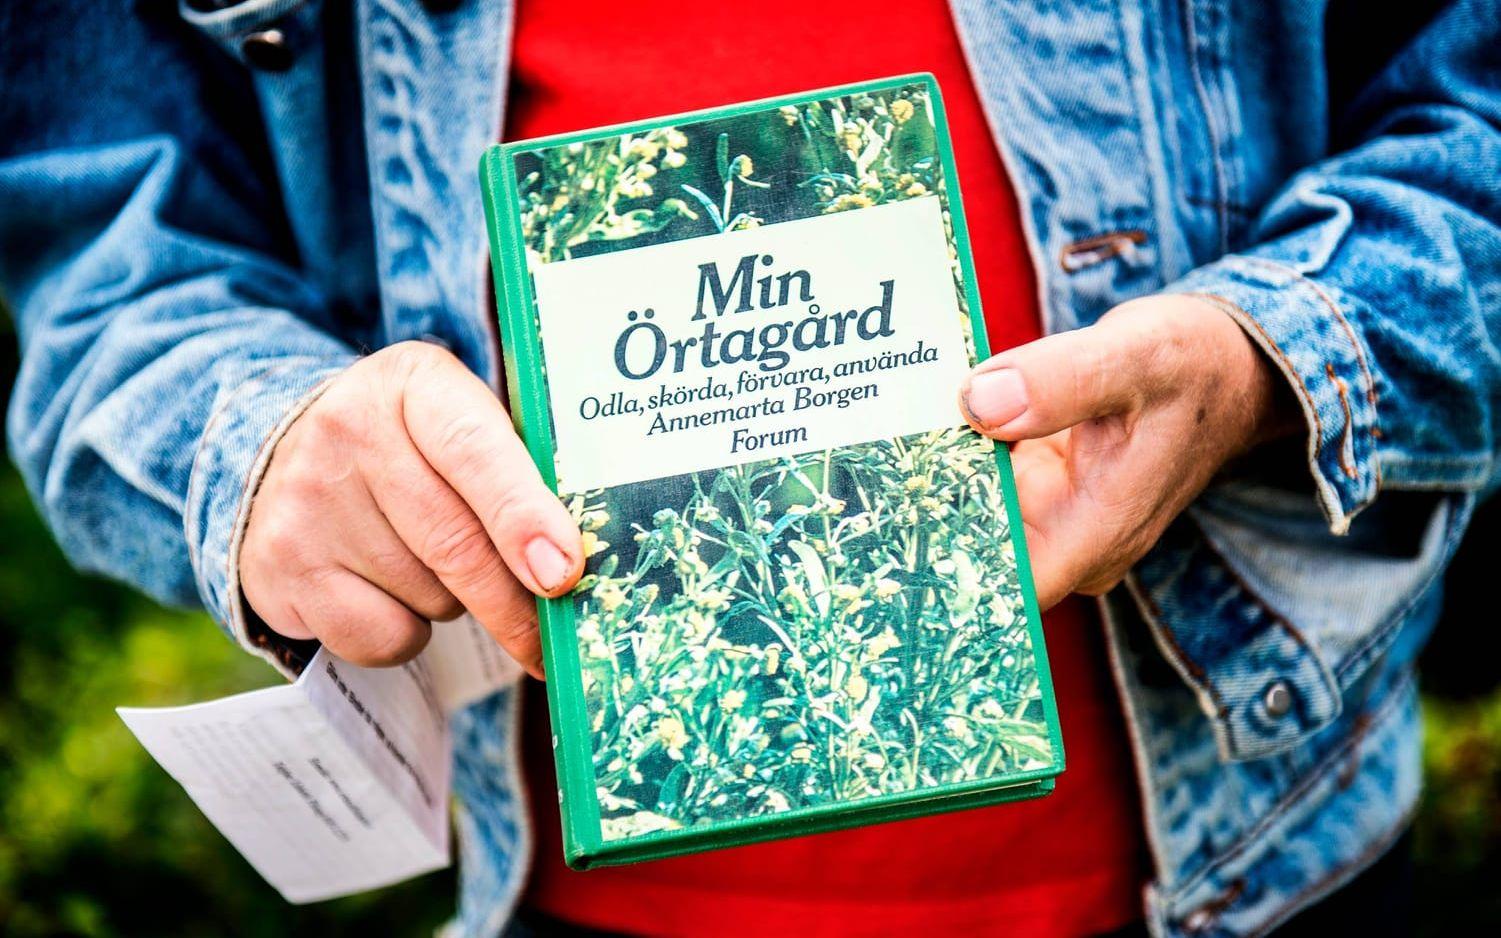 Jan Vinäng visar upp sin favoritbok, "Min Örtagård" av Annemarta Borgen, en bok som har inspirerat honom mycket. Bild: Jenny Ingemarsson